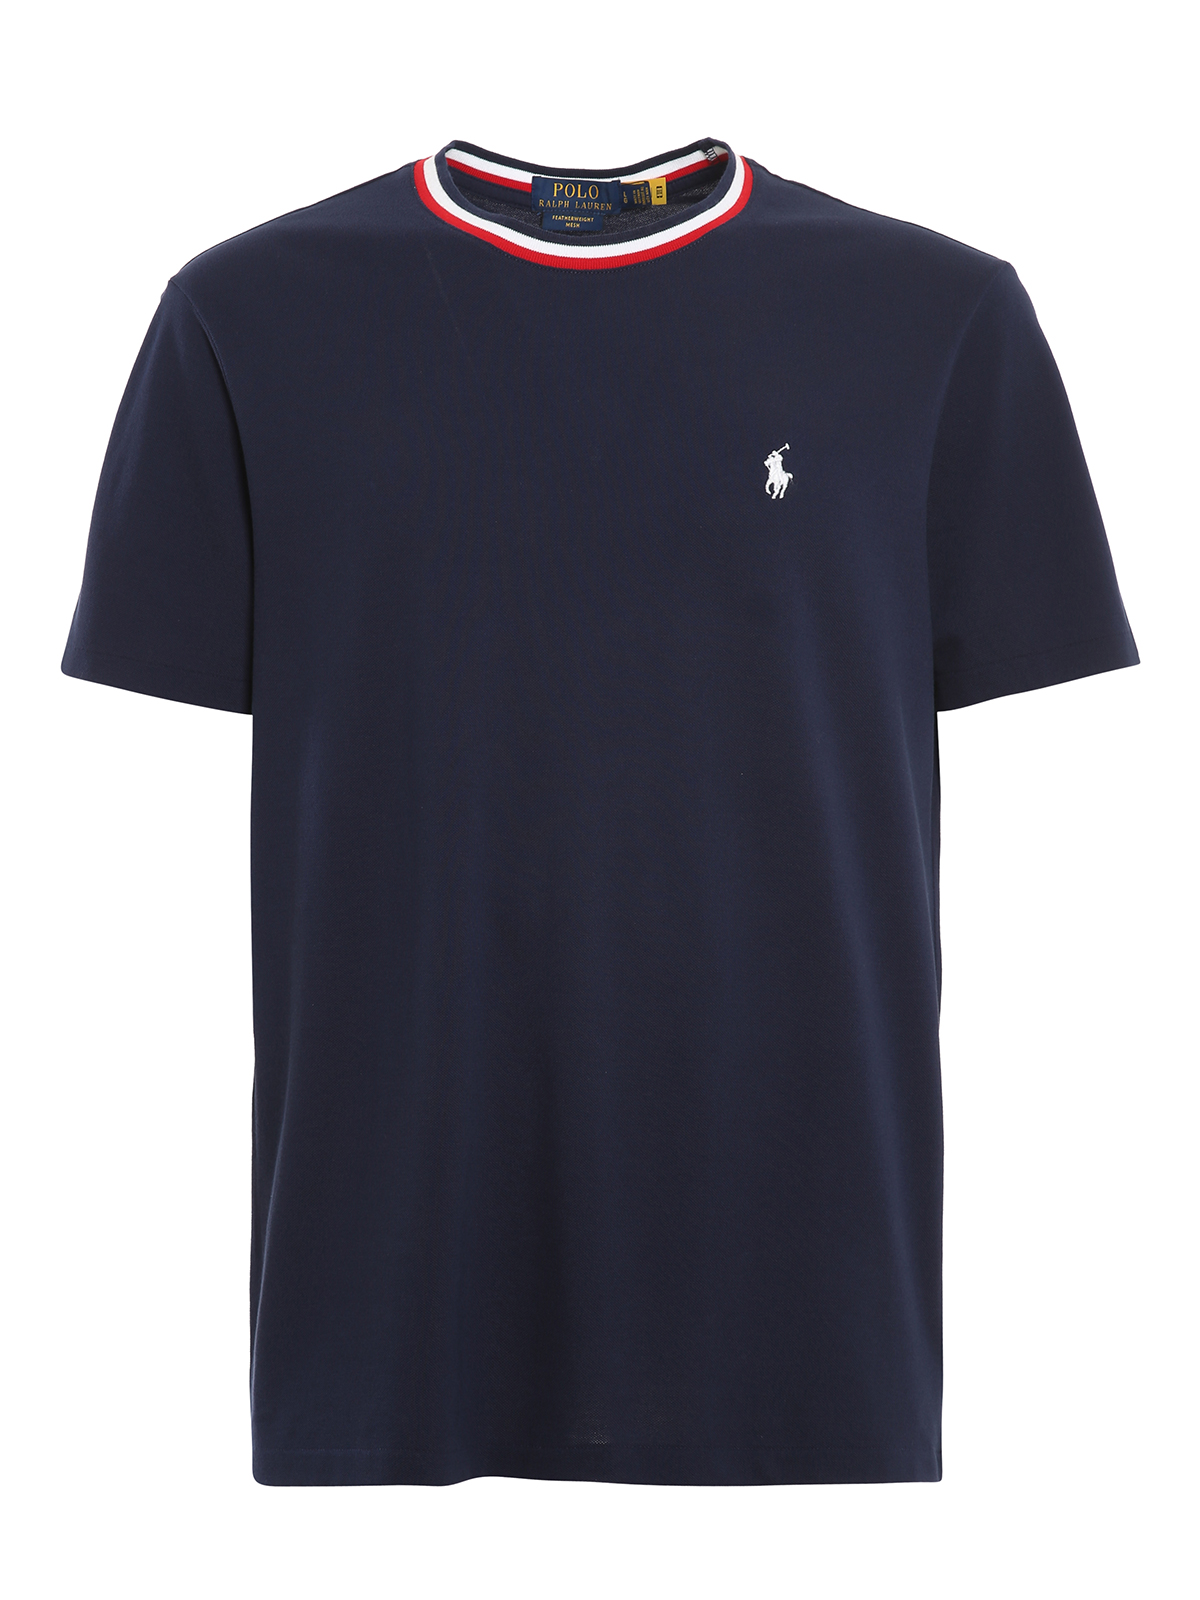 T-shirts Polo Ralph Lauren - Piqué T-shirt - 710812662007 | iKRIX.com